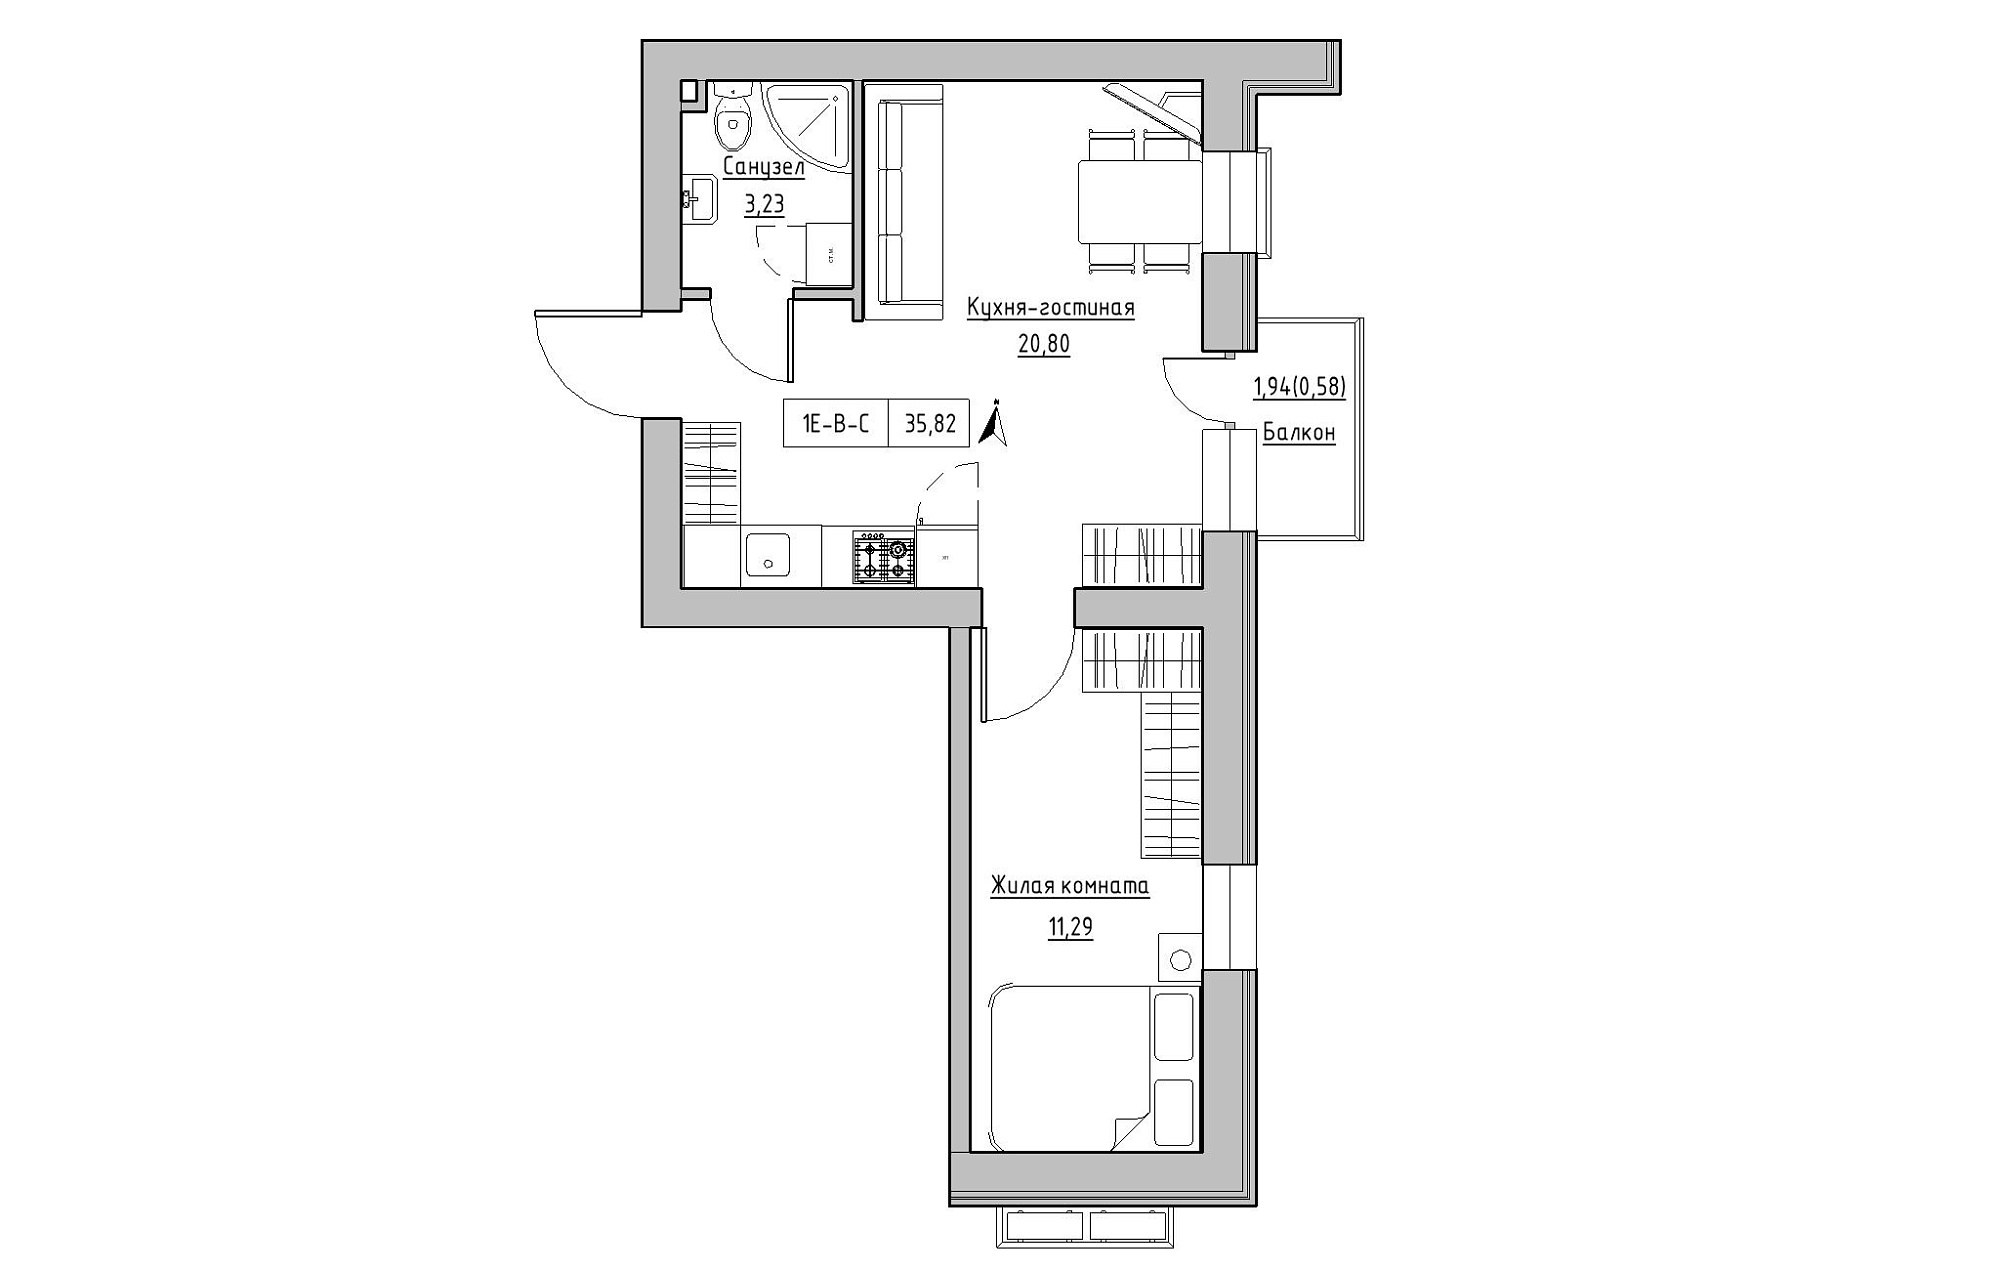 Планування 1-к квартира площею 35.82м2, KS-019-04/0007.